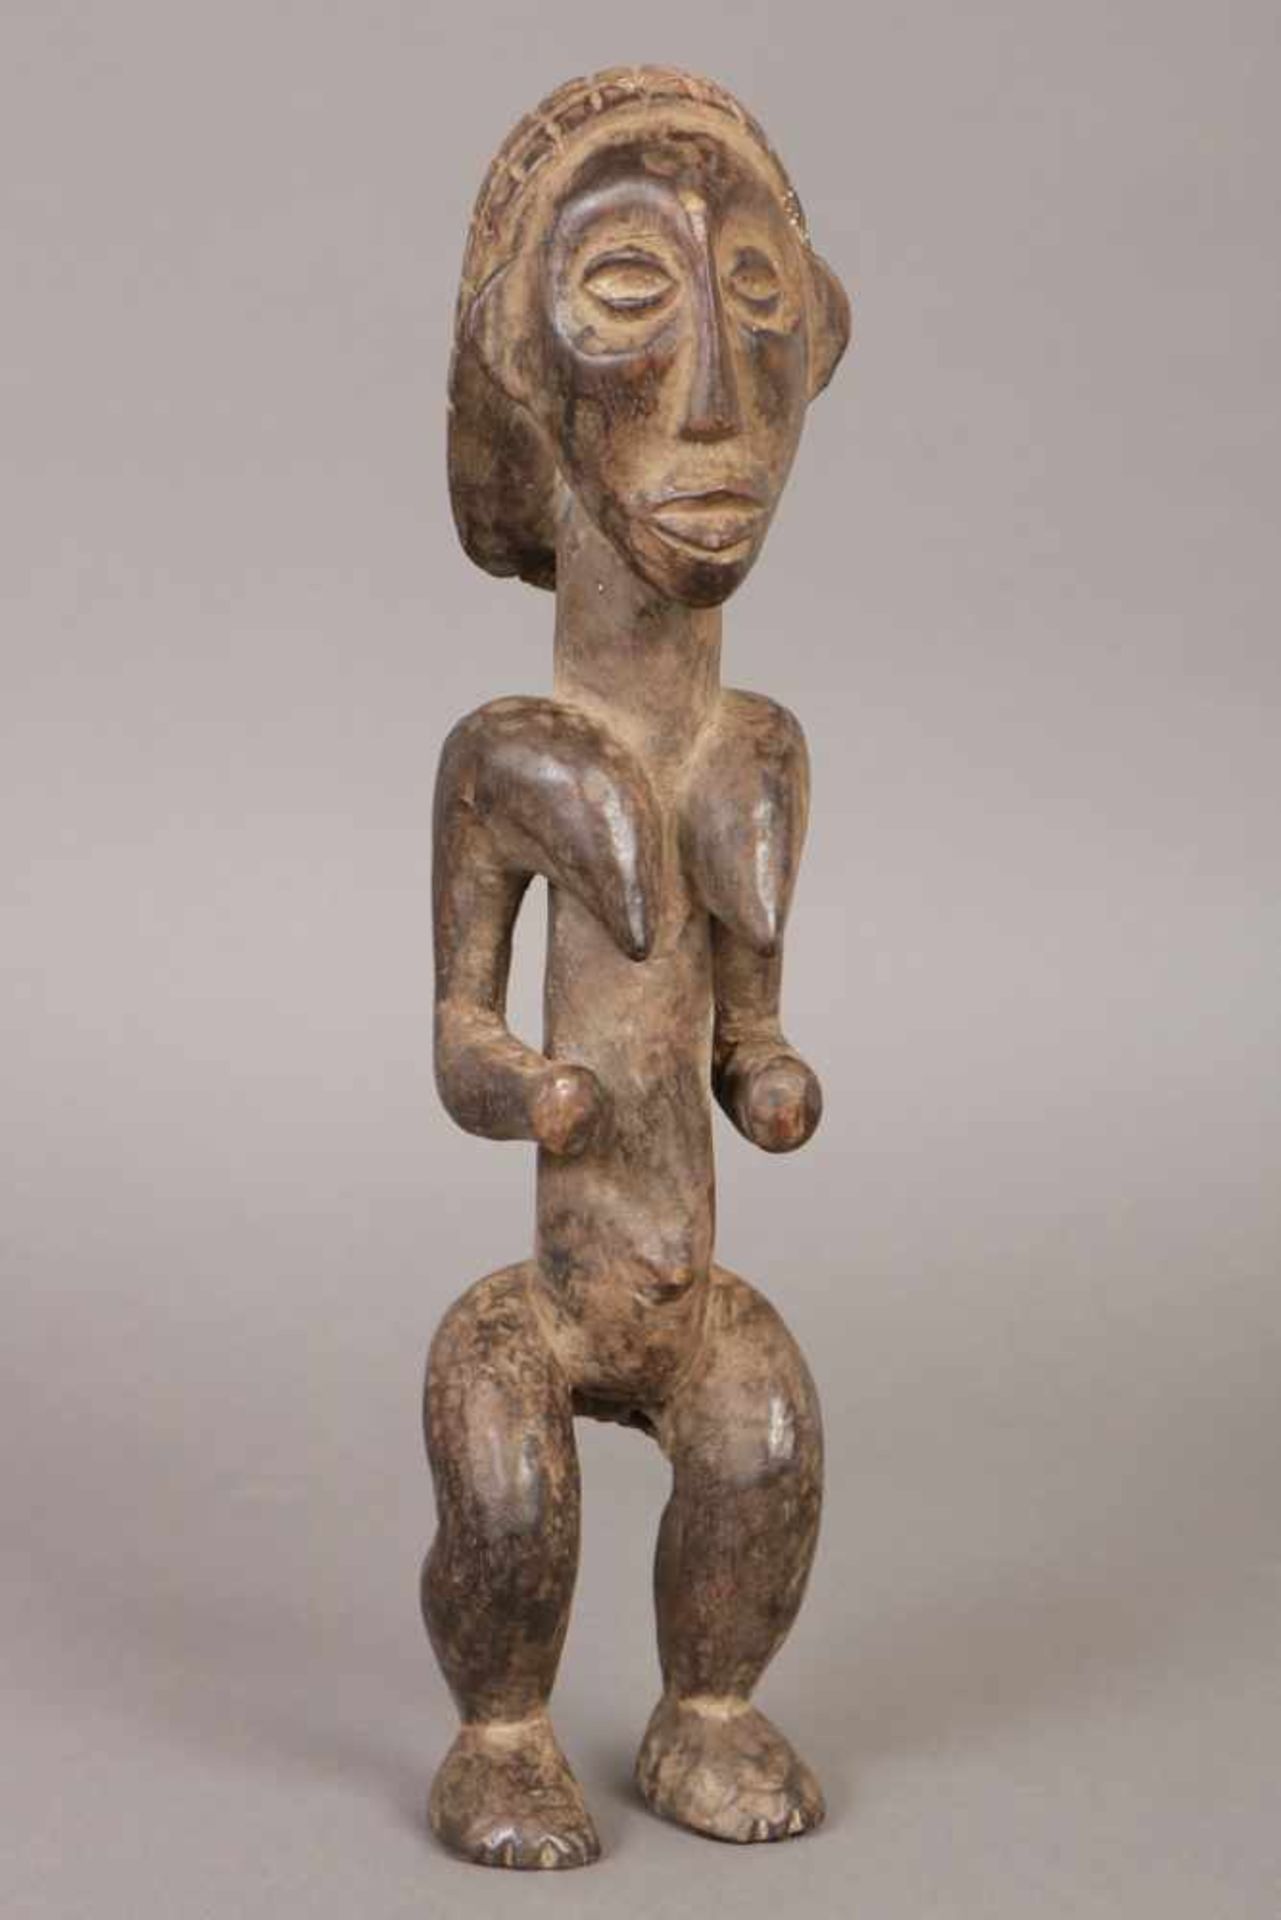 Afrikanische Ritualfigur Holz, dunkel patiniert, Fang, Gabun, stehende weibliche Figur mit